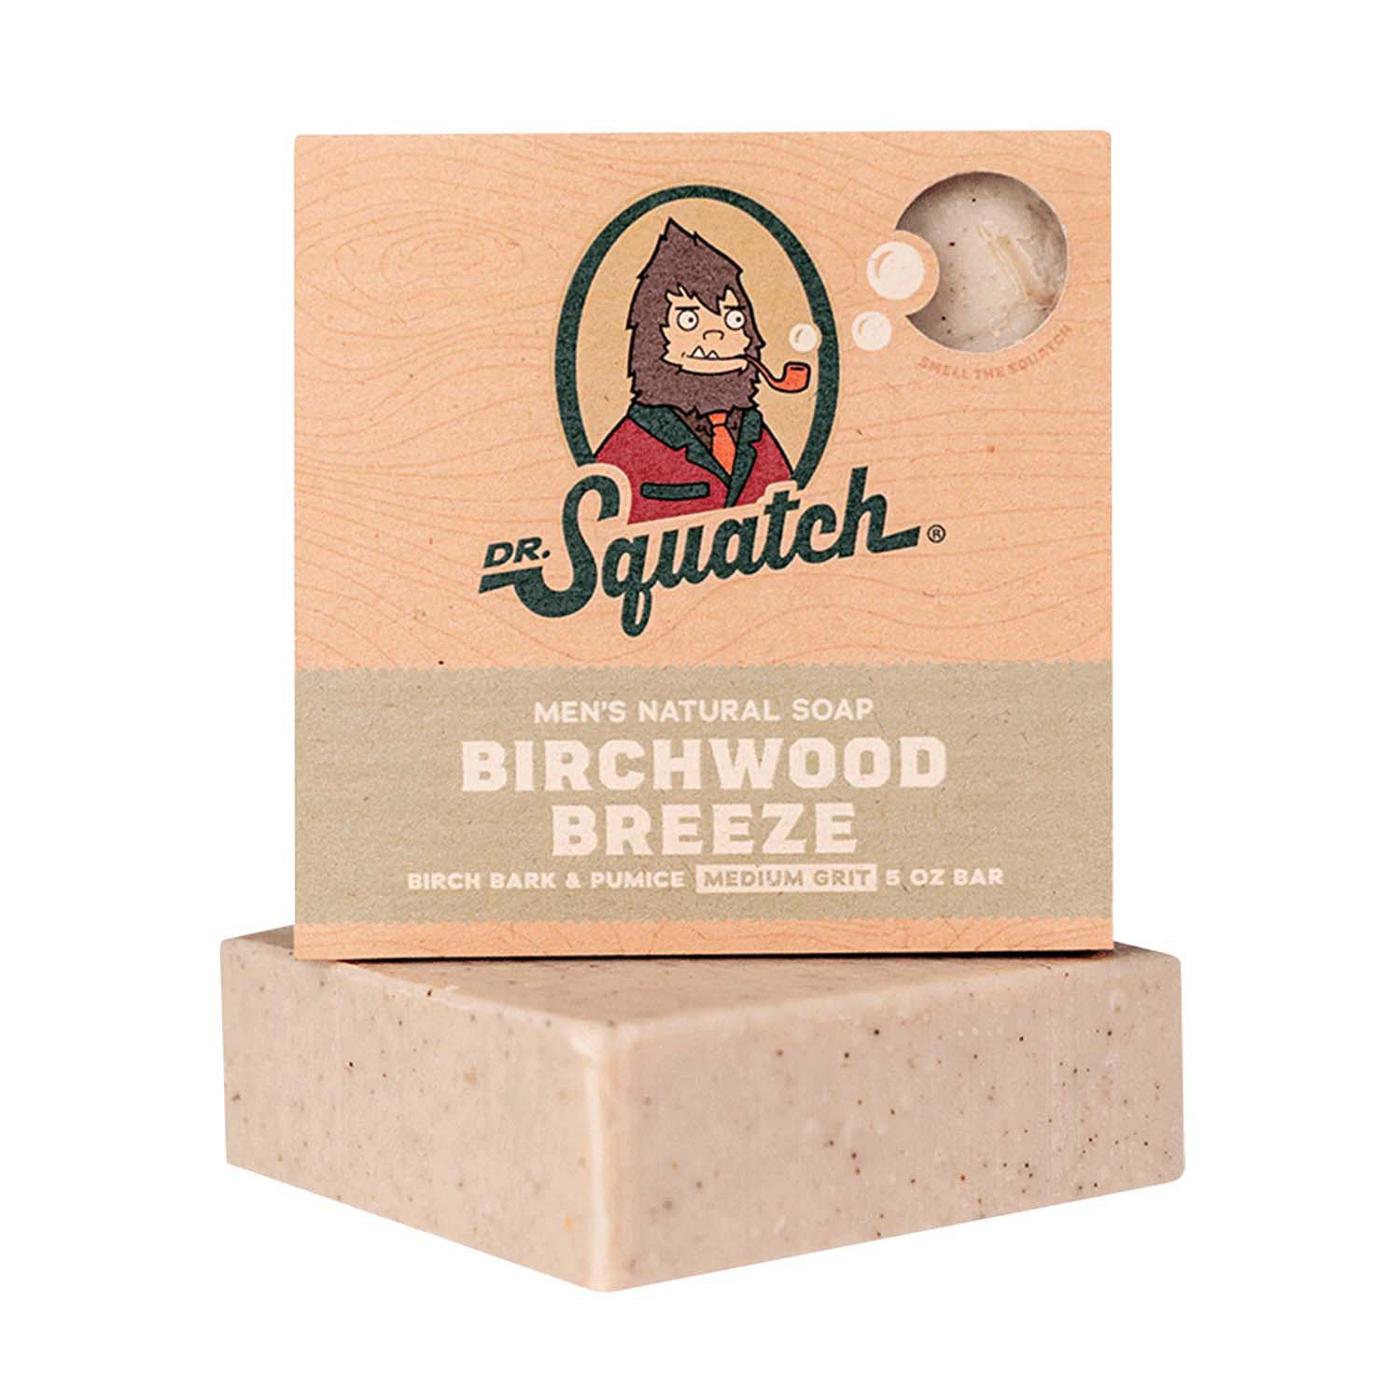 Dr. Squatch Men's Natural Soap Bar - Birchwood Breeze; image 4 of 6